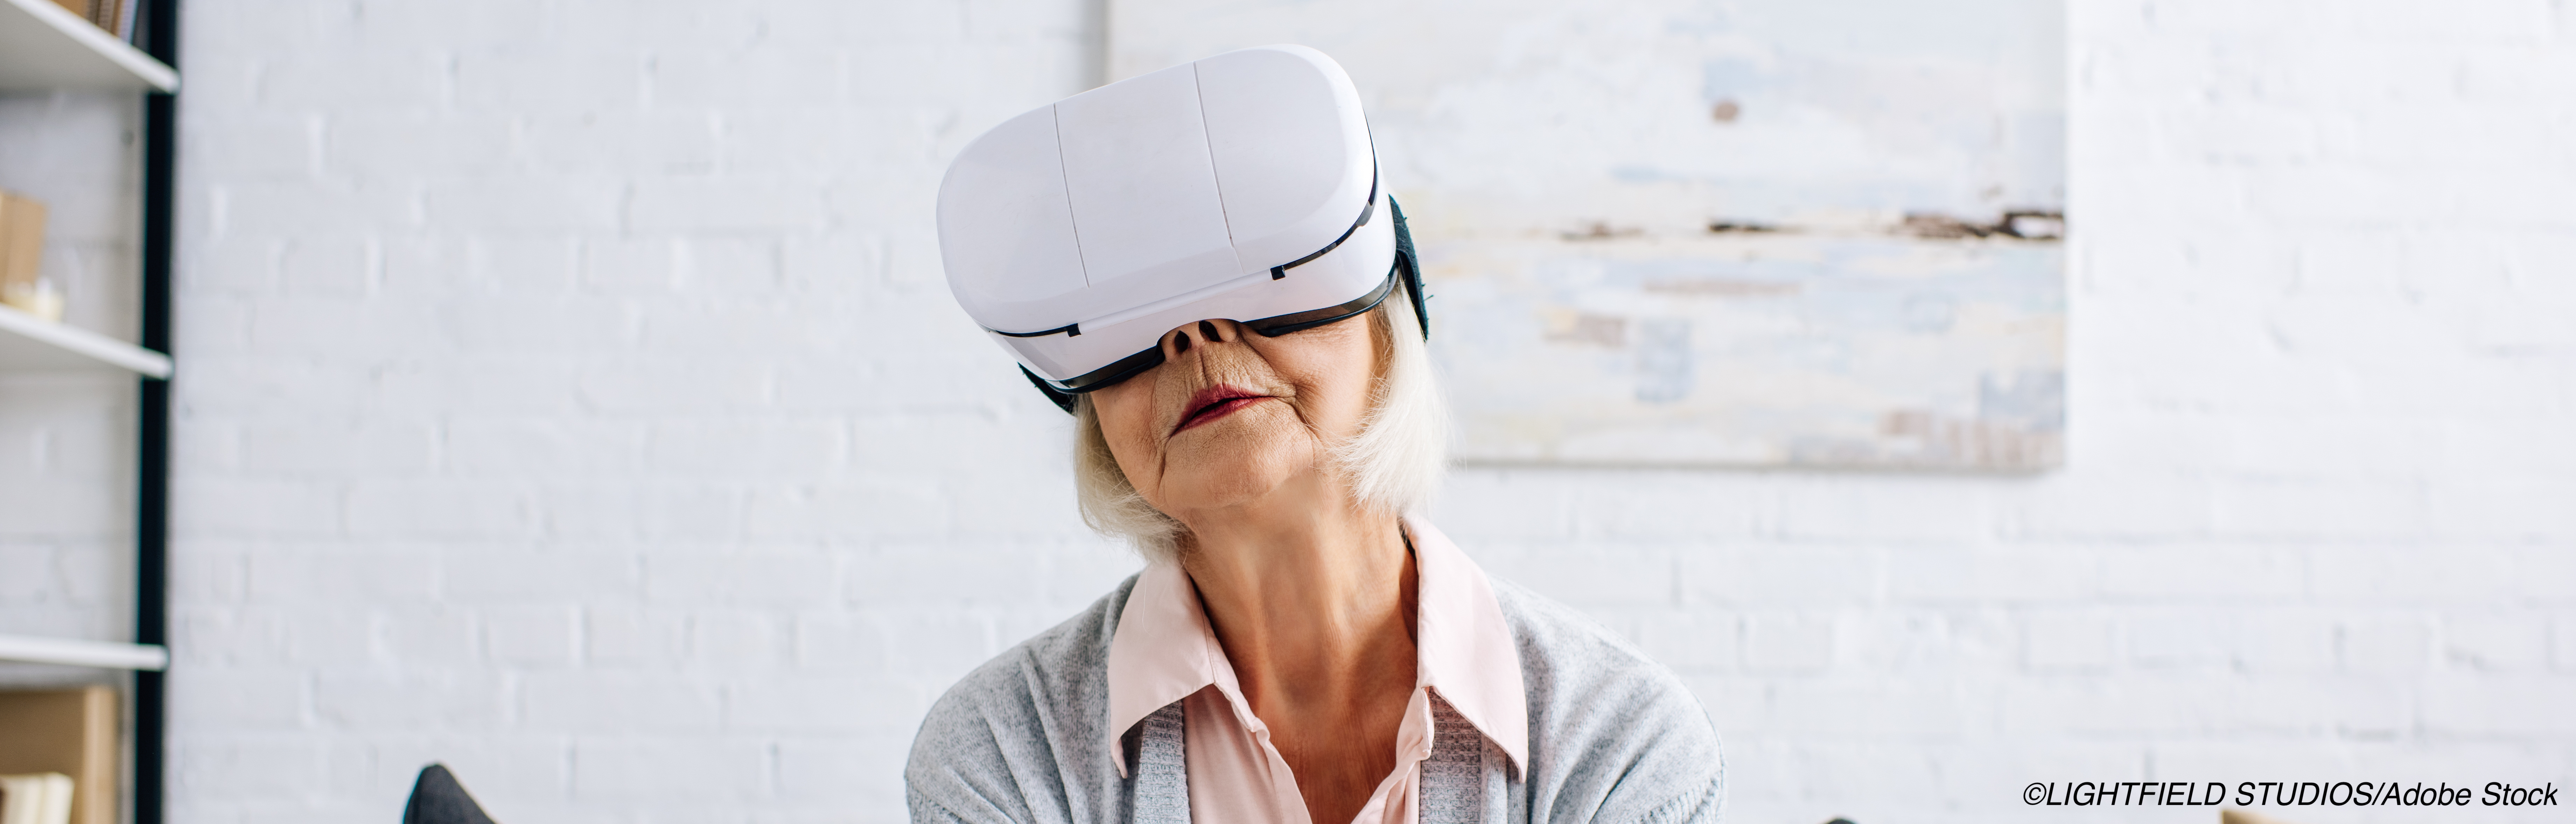 FDA Approves VR System for Chronic Lower Back Pain